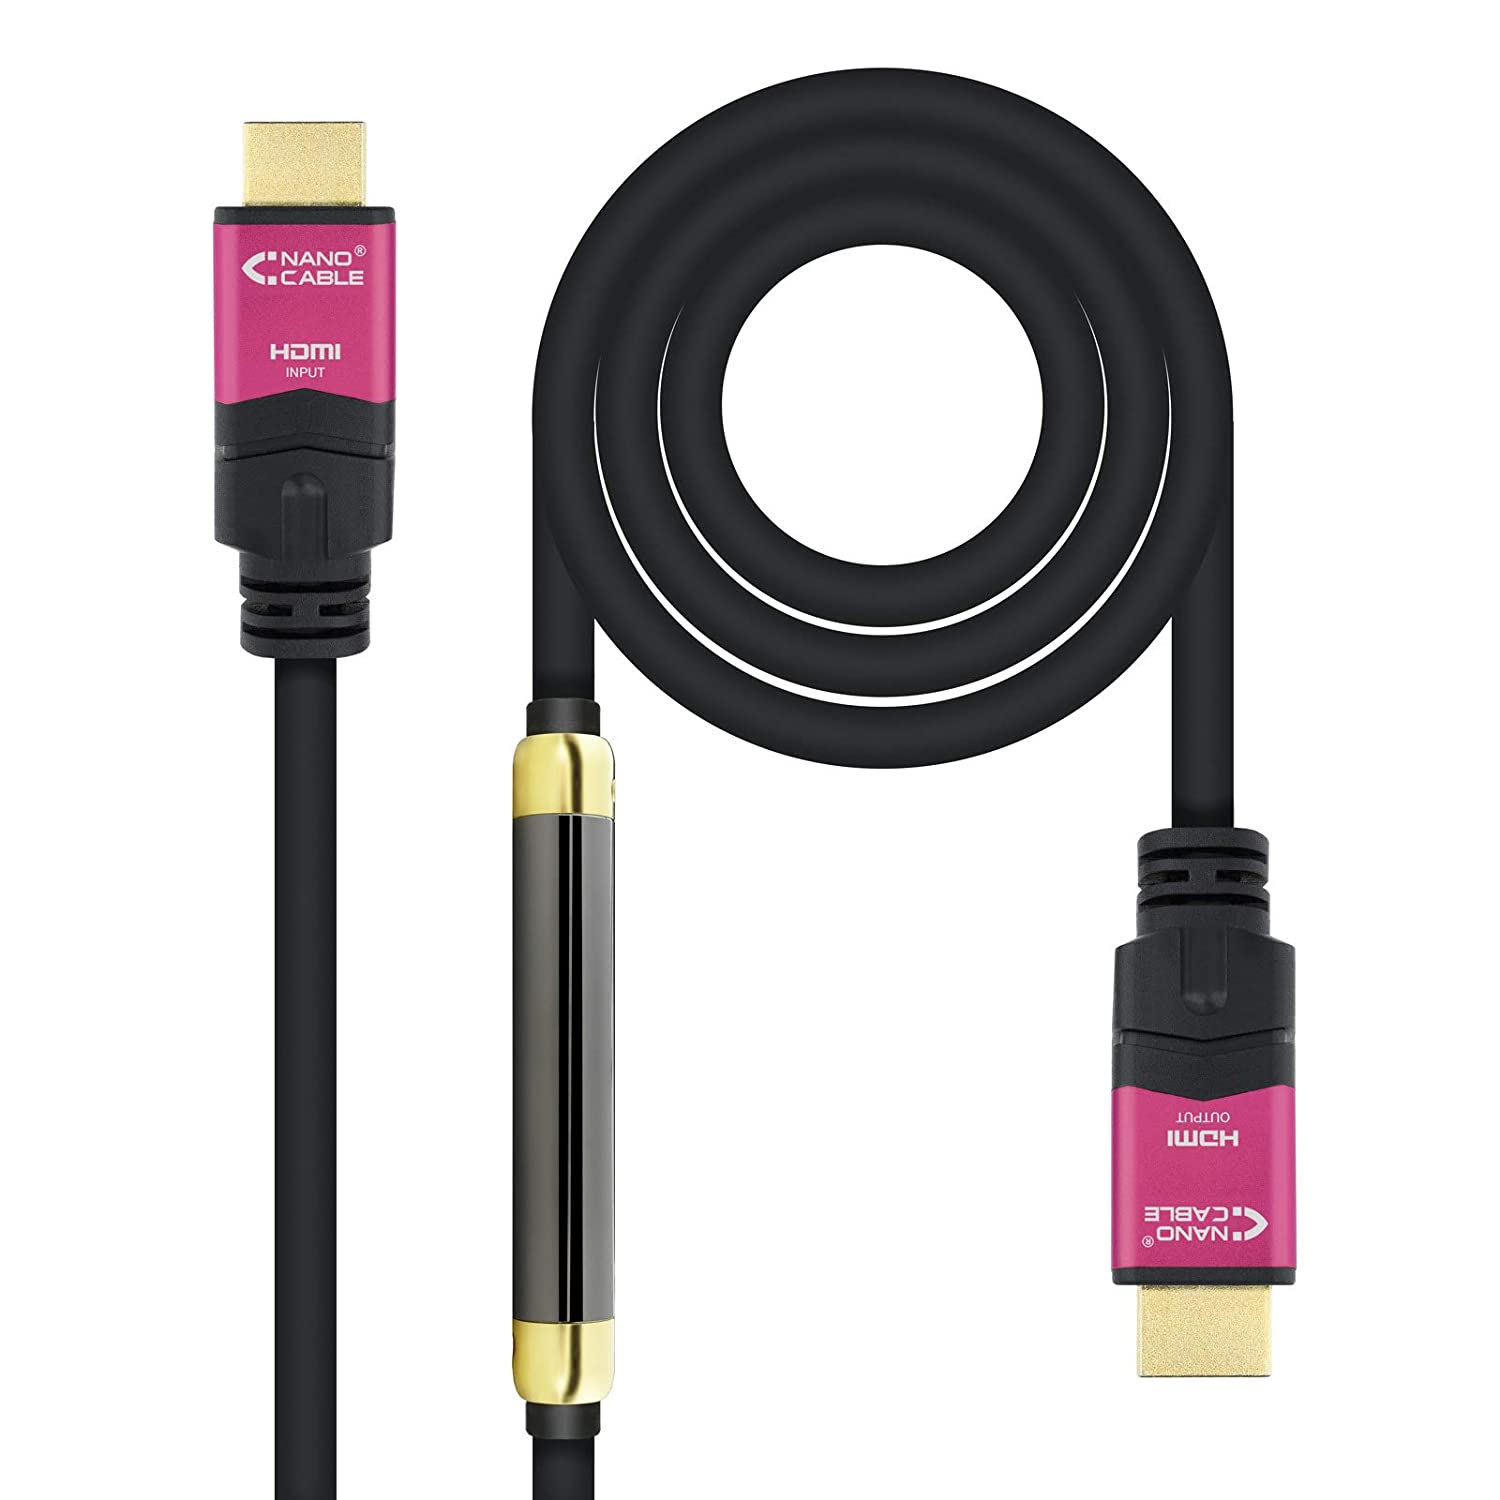 Câble Nanocable HDMI v2.0 Mâle avec Répéteur vers HDMI v2.0 Mâle 30m - 4K@60Hz 18Gbps - Haute Vitesse - Couleur Noir/Rose